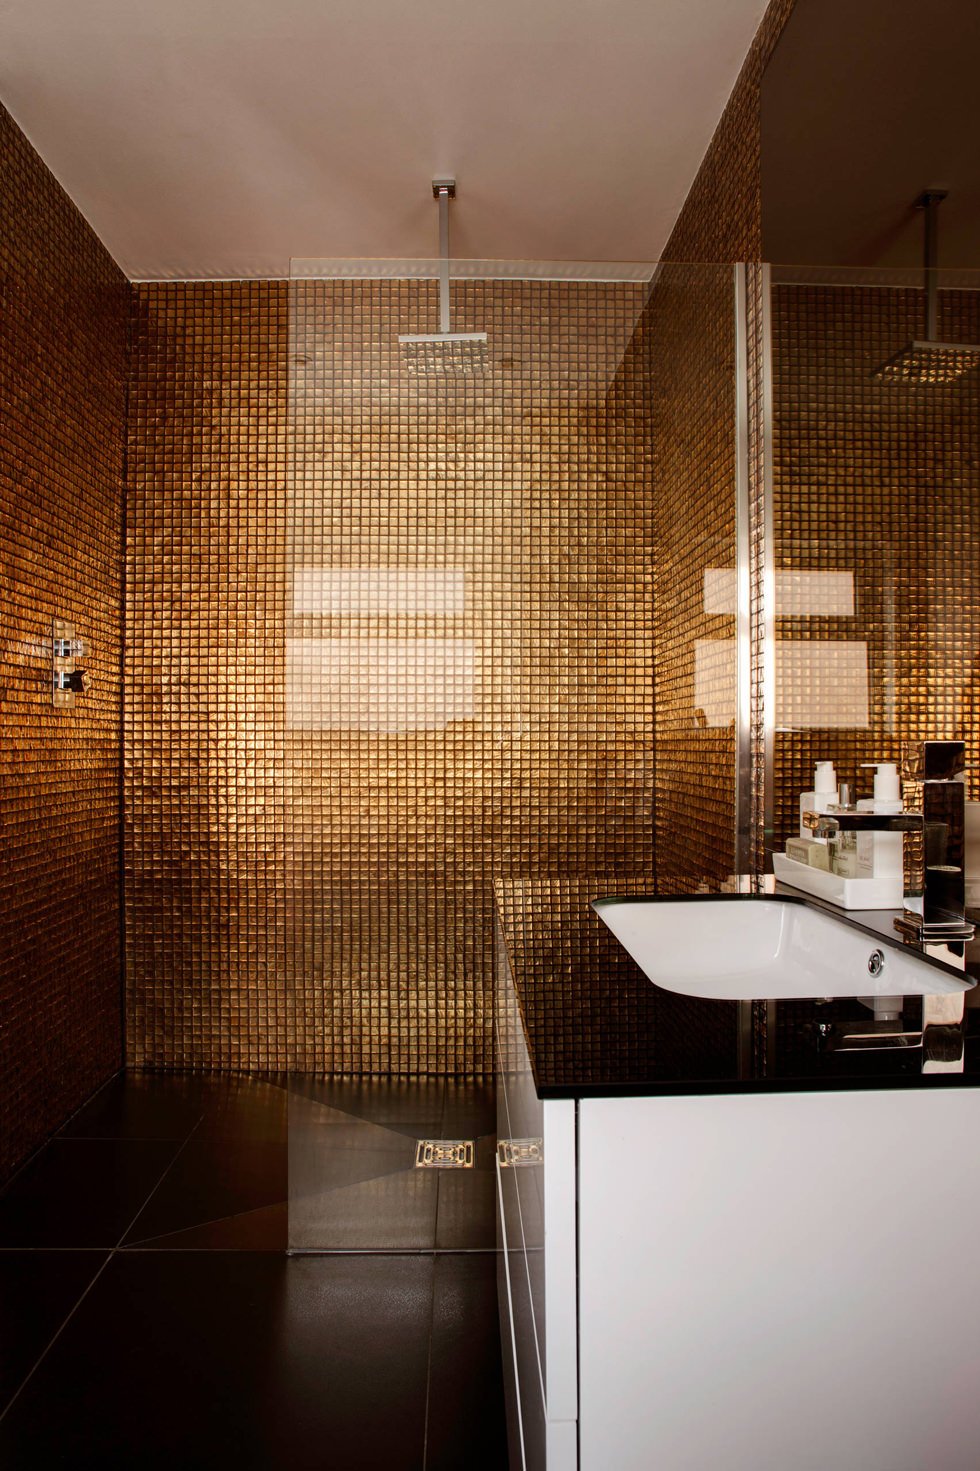 Design bagno moderno ed elegante, con mosaico metallico di colore marrone bronzo